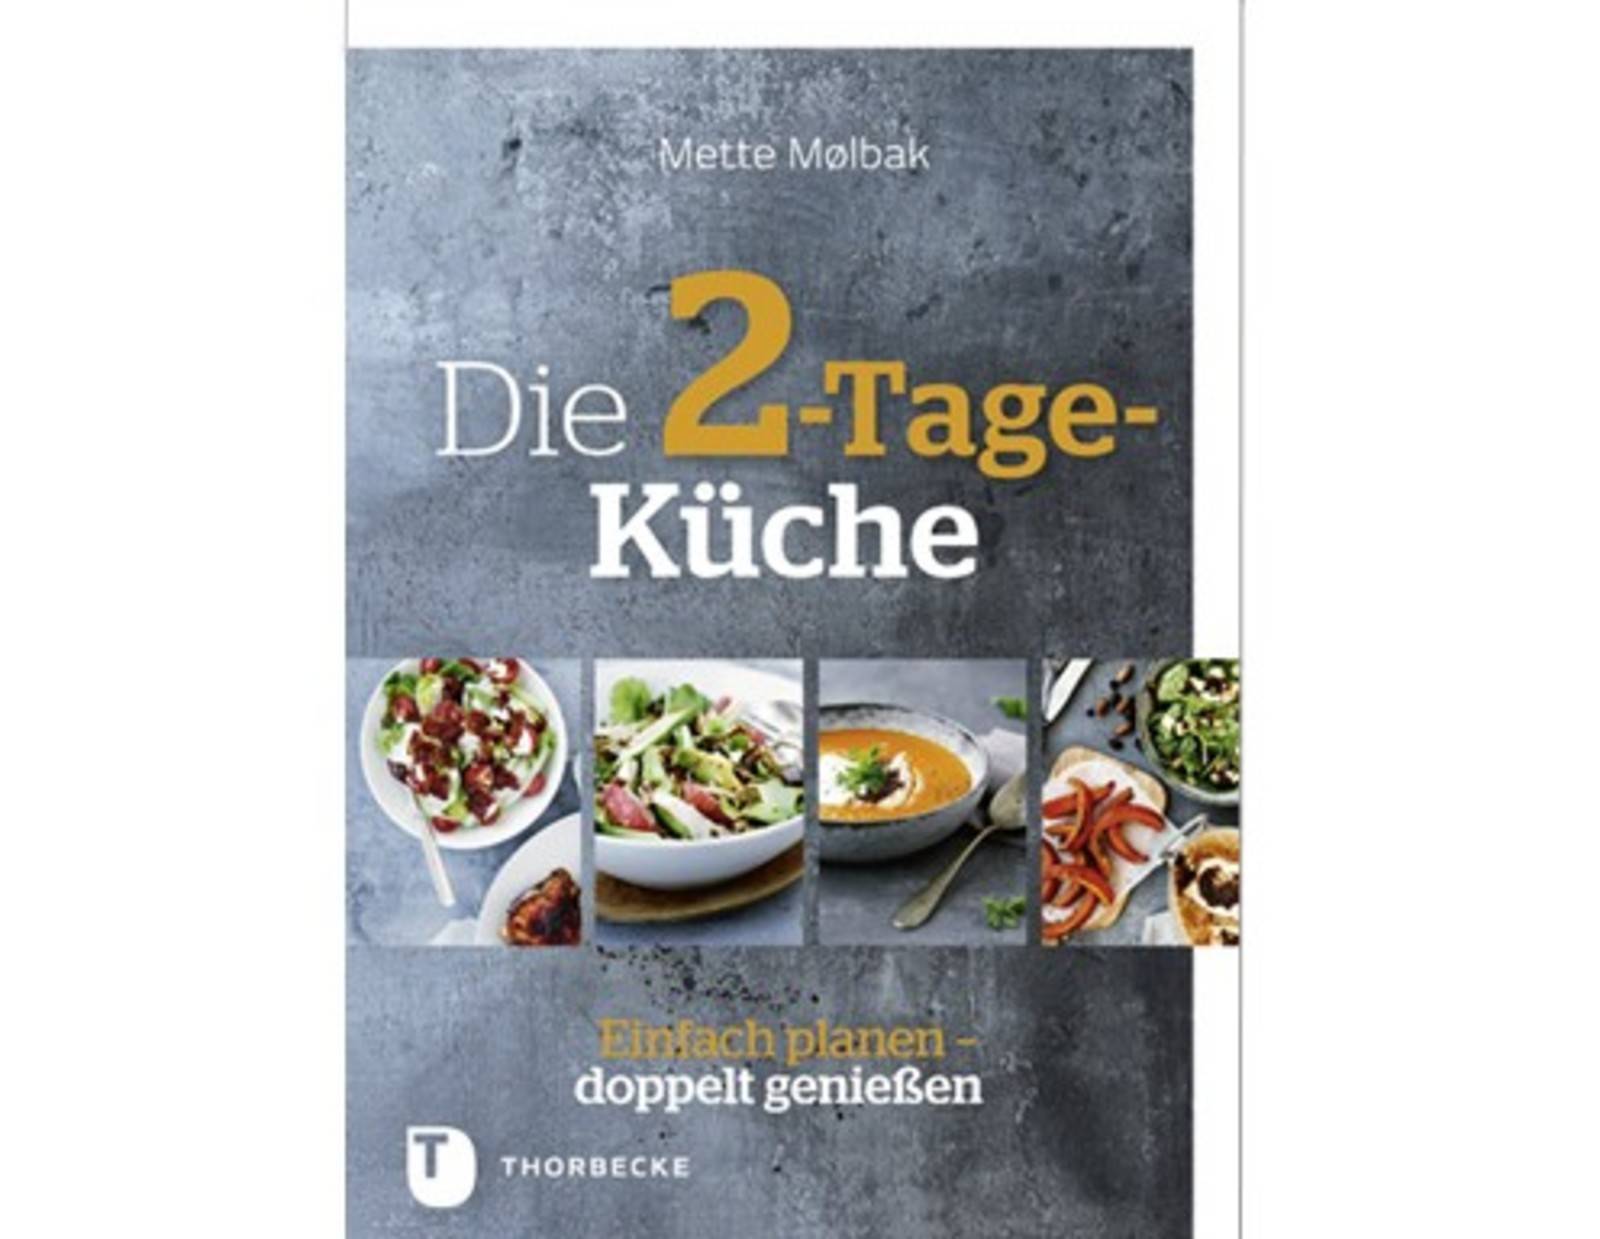 Buchcover 2-Tage-Küche